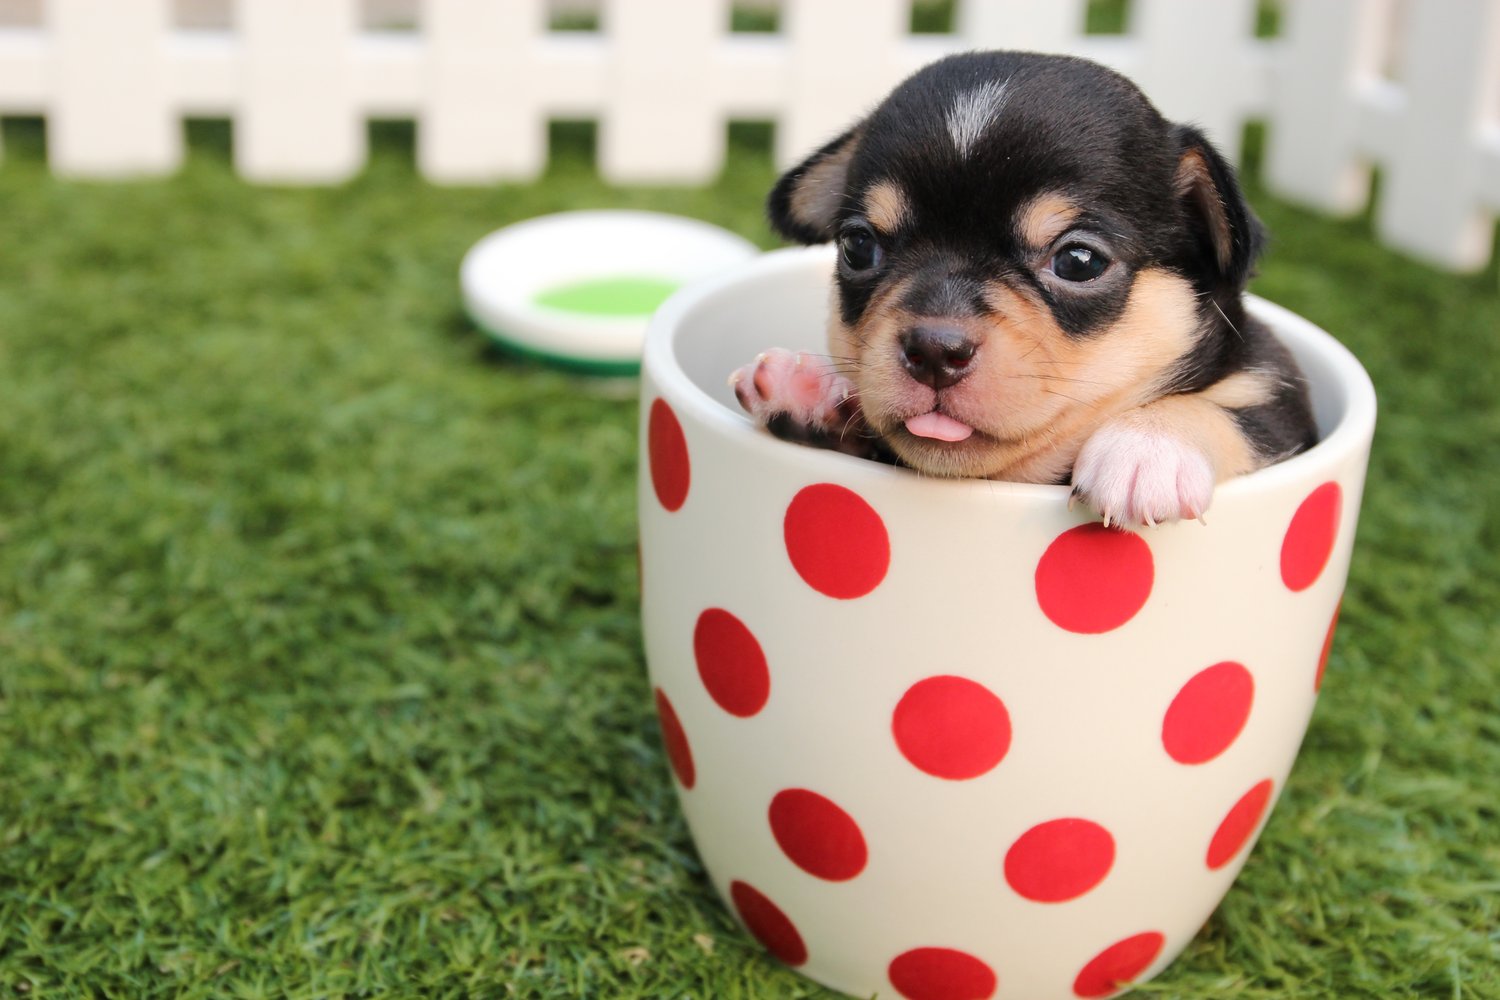 Tiny puppy in a spotty flower pot